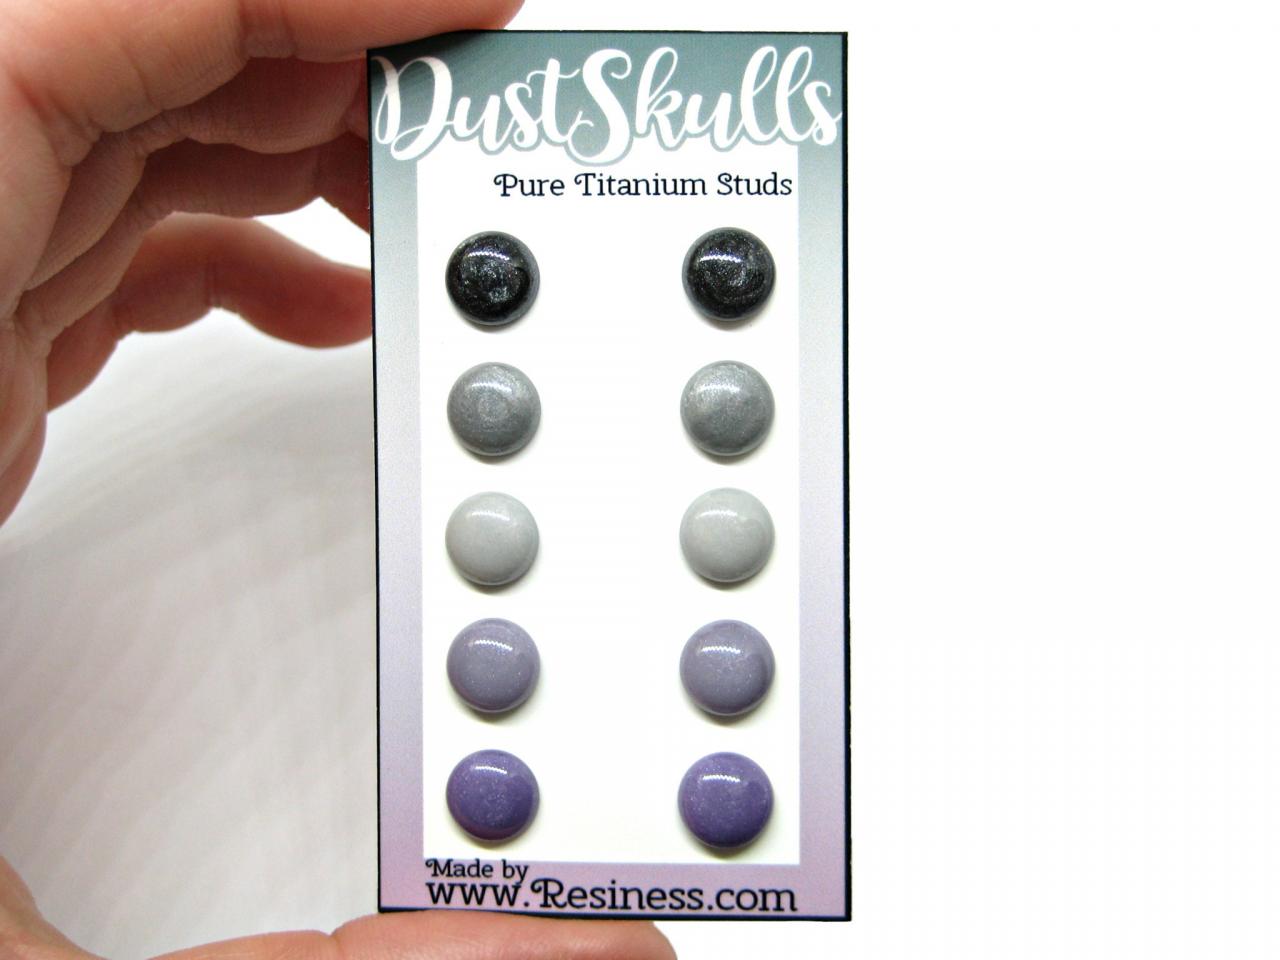 Dust Skulls Stud Earring Set, 5 Pair Set, Gray/purple Stud Set, Hypoallergenic Posts, Pure Titanium Studs, Tiny Stud Earrings, Gift Idea